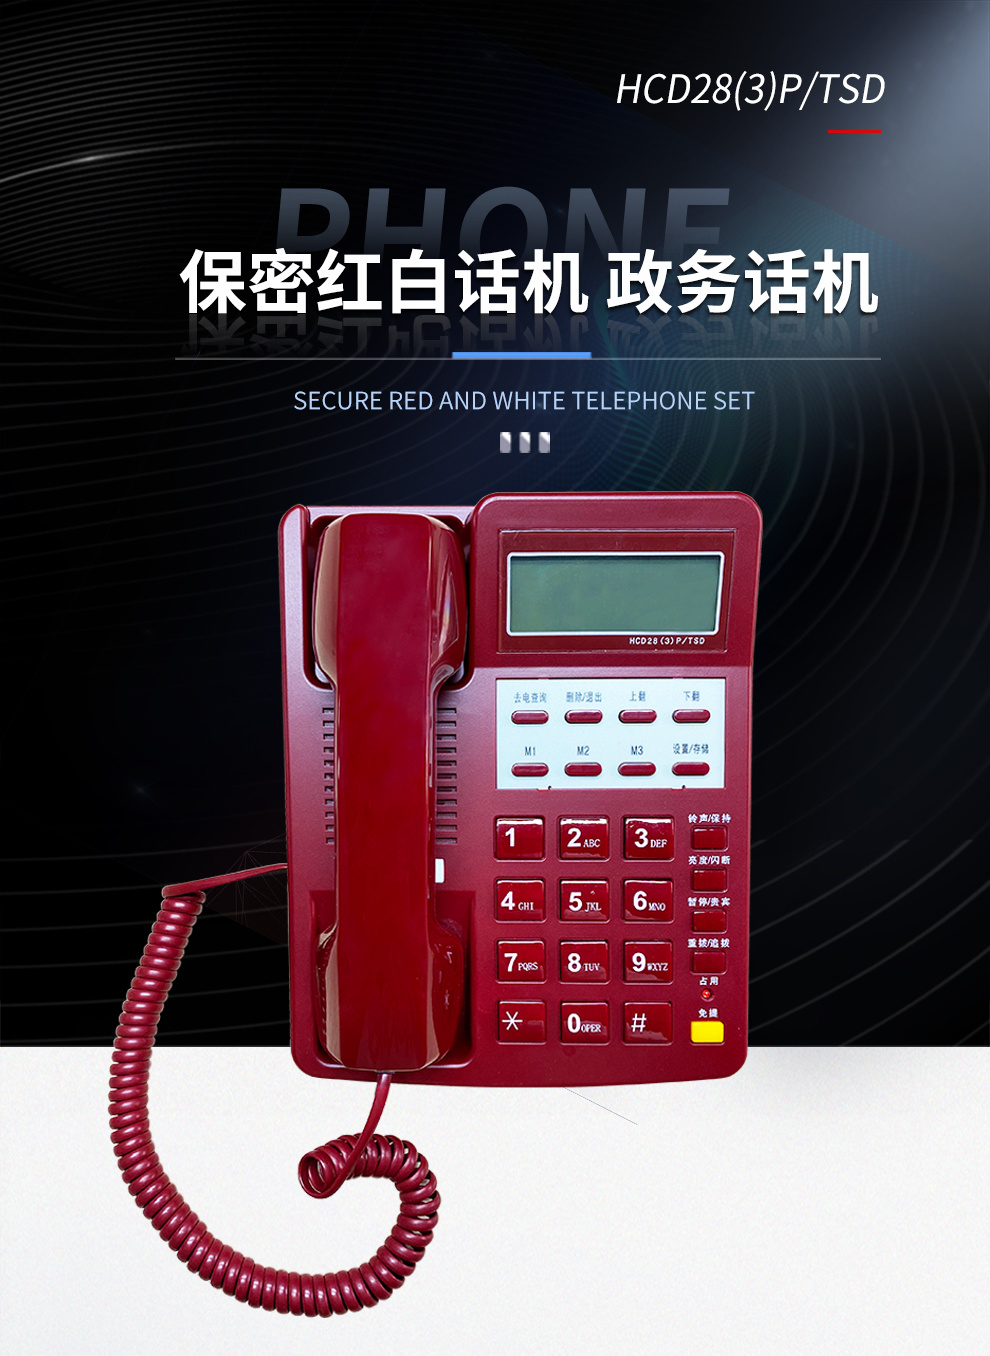 恒捷HCD28(3)P/TSD型 电话机白/红保密红白话机 政务话机 军政保密话机 话音传输质量好 可靠性高 防雷击示例图8